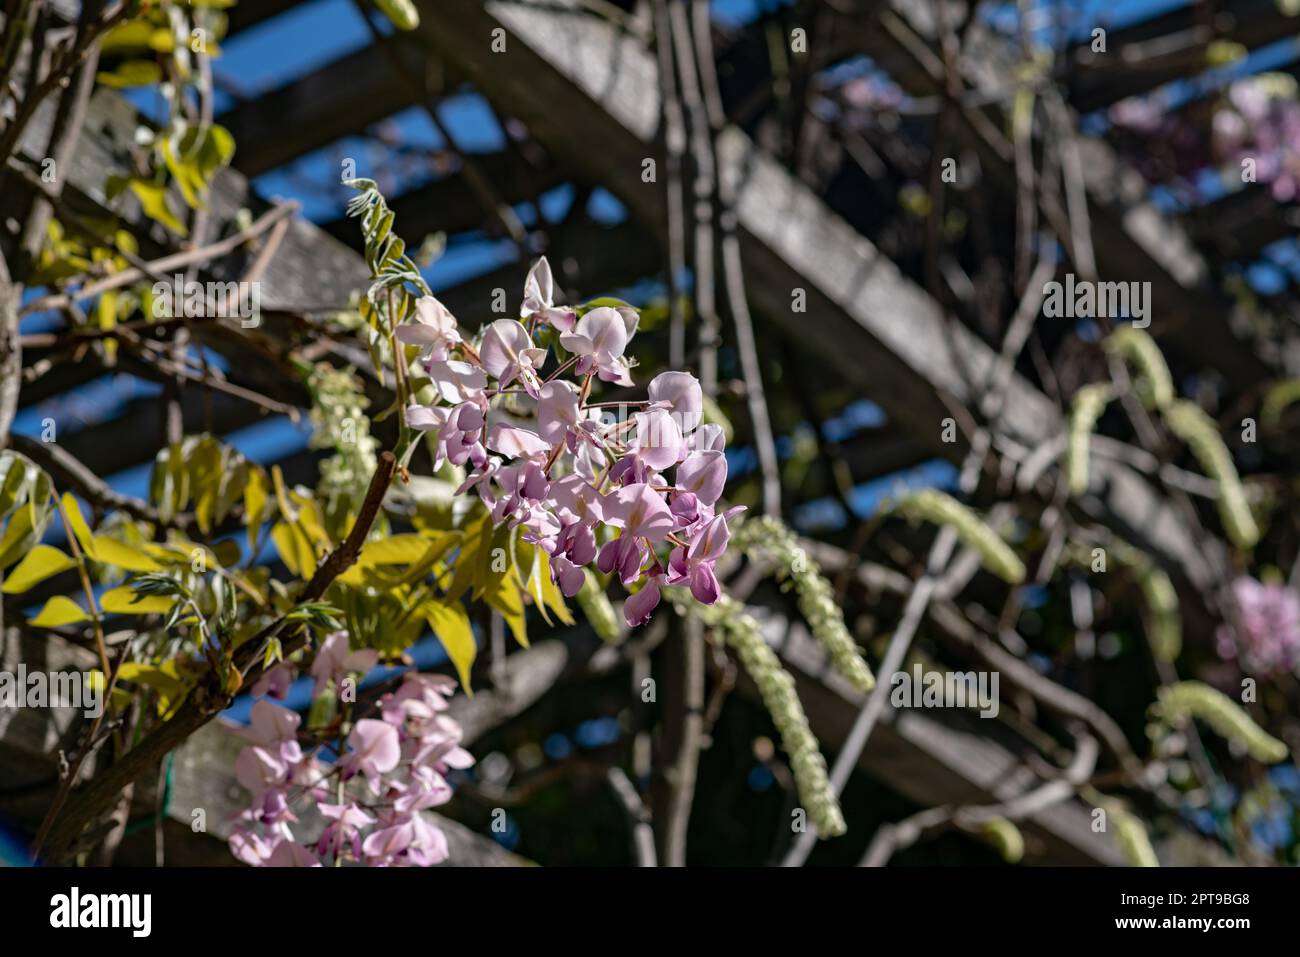 Glicine con petali rosa fa parte della famiglia delle Papilionacee di origine asiatica, nei parchi crea un romantico sfondo fiorito. Foto Stock